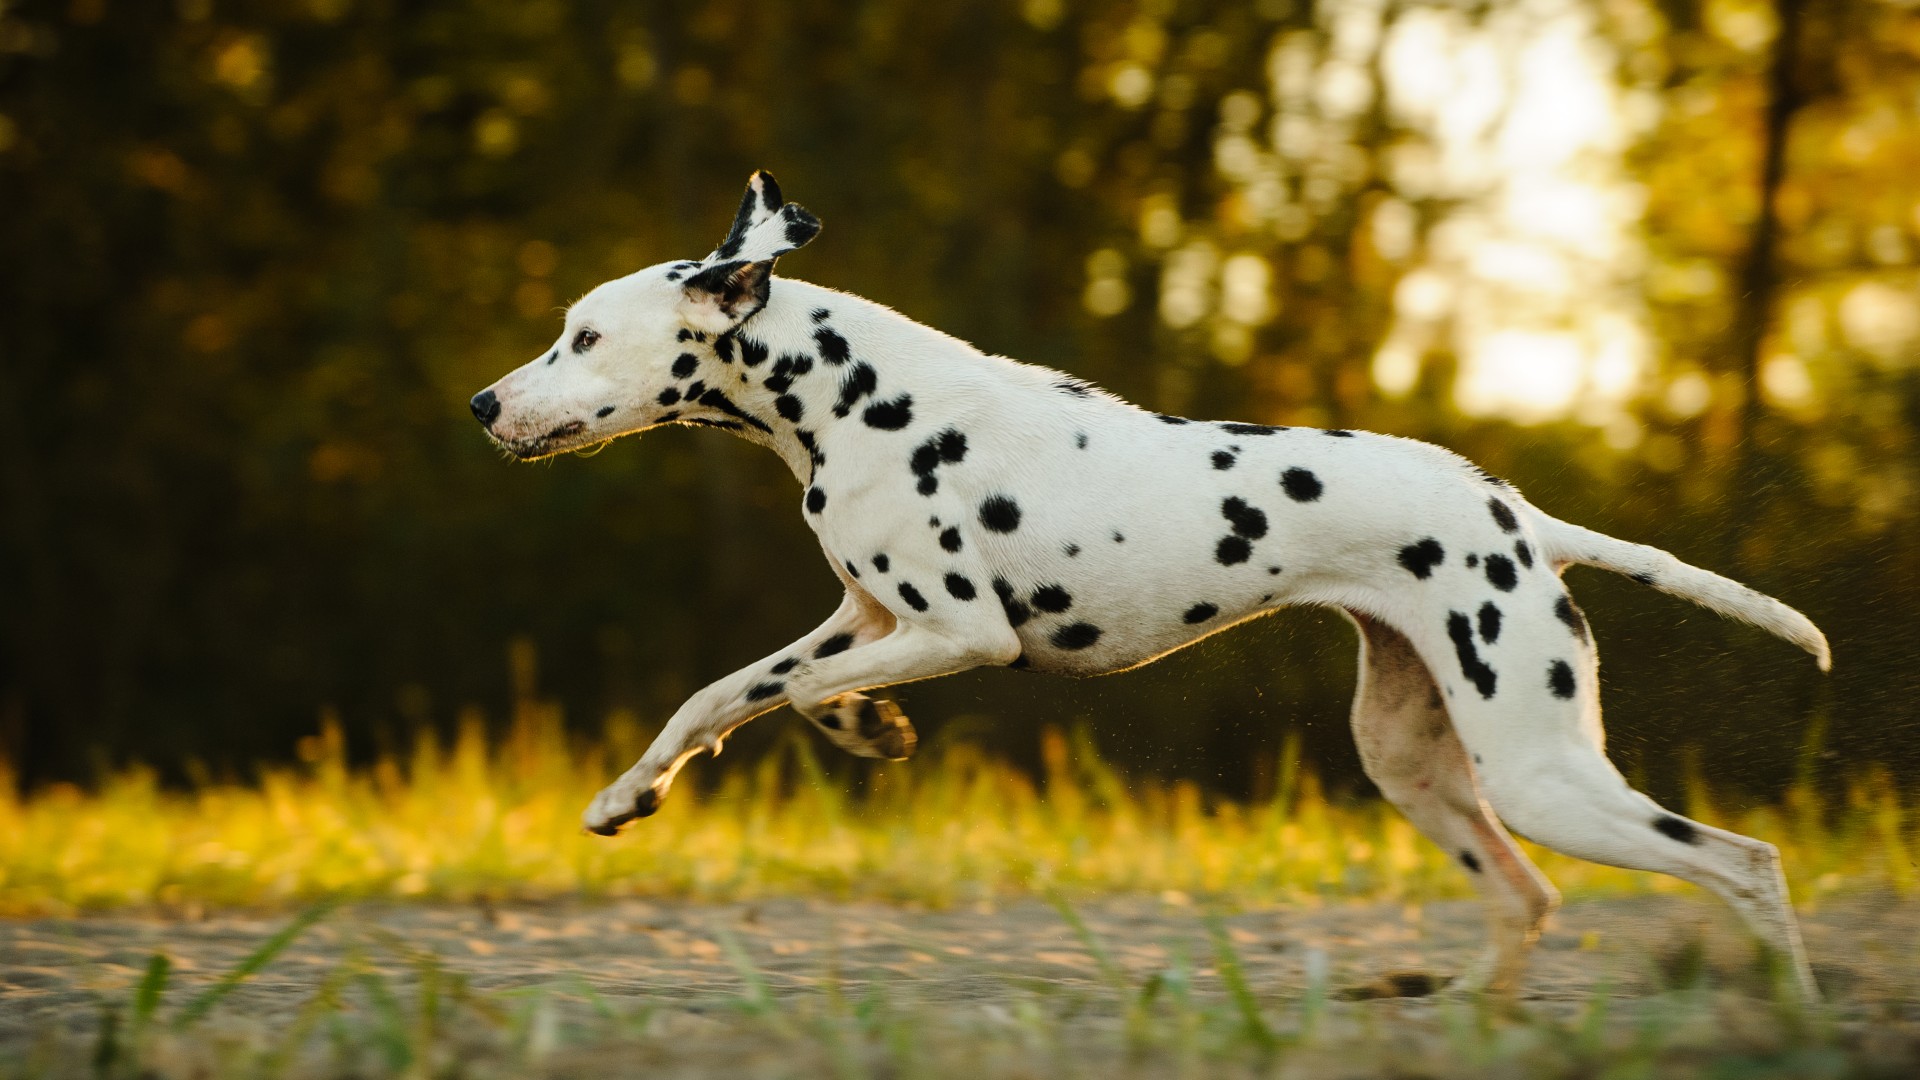 a Dalmatian running across a field